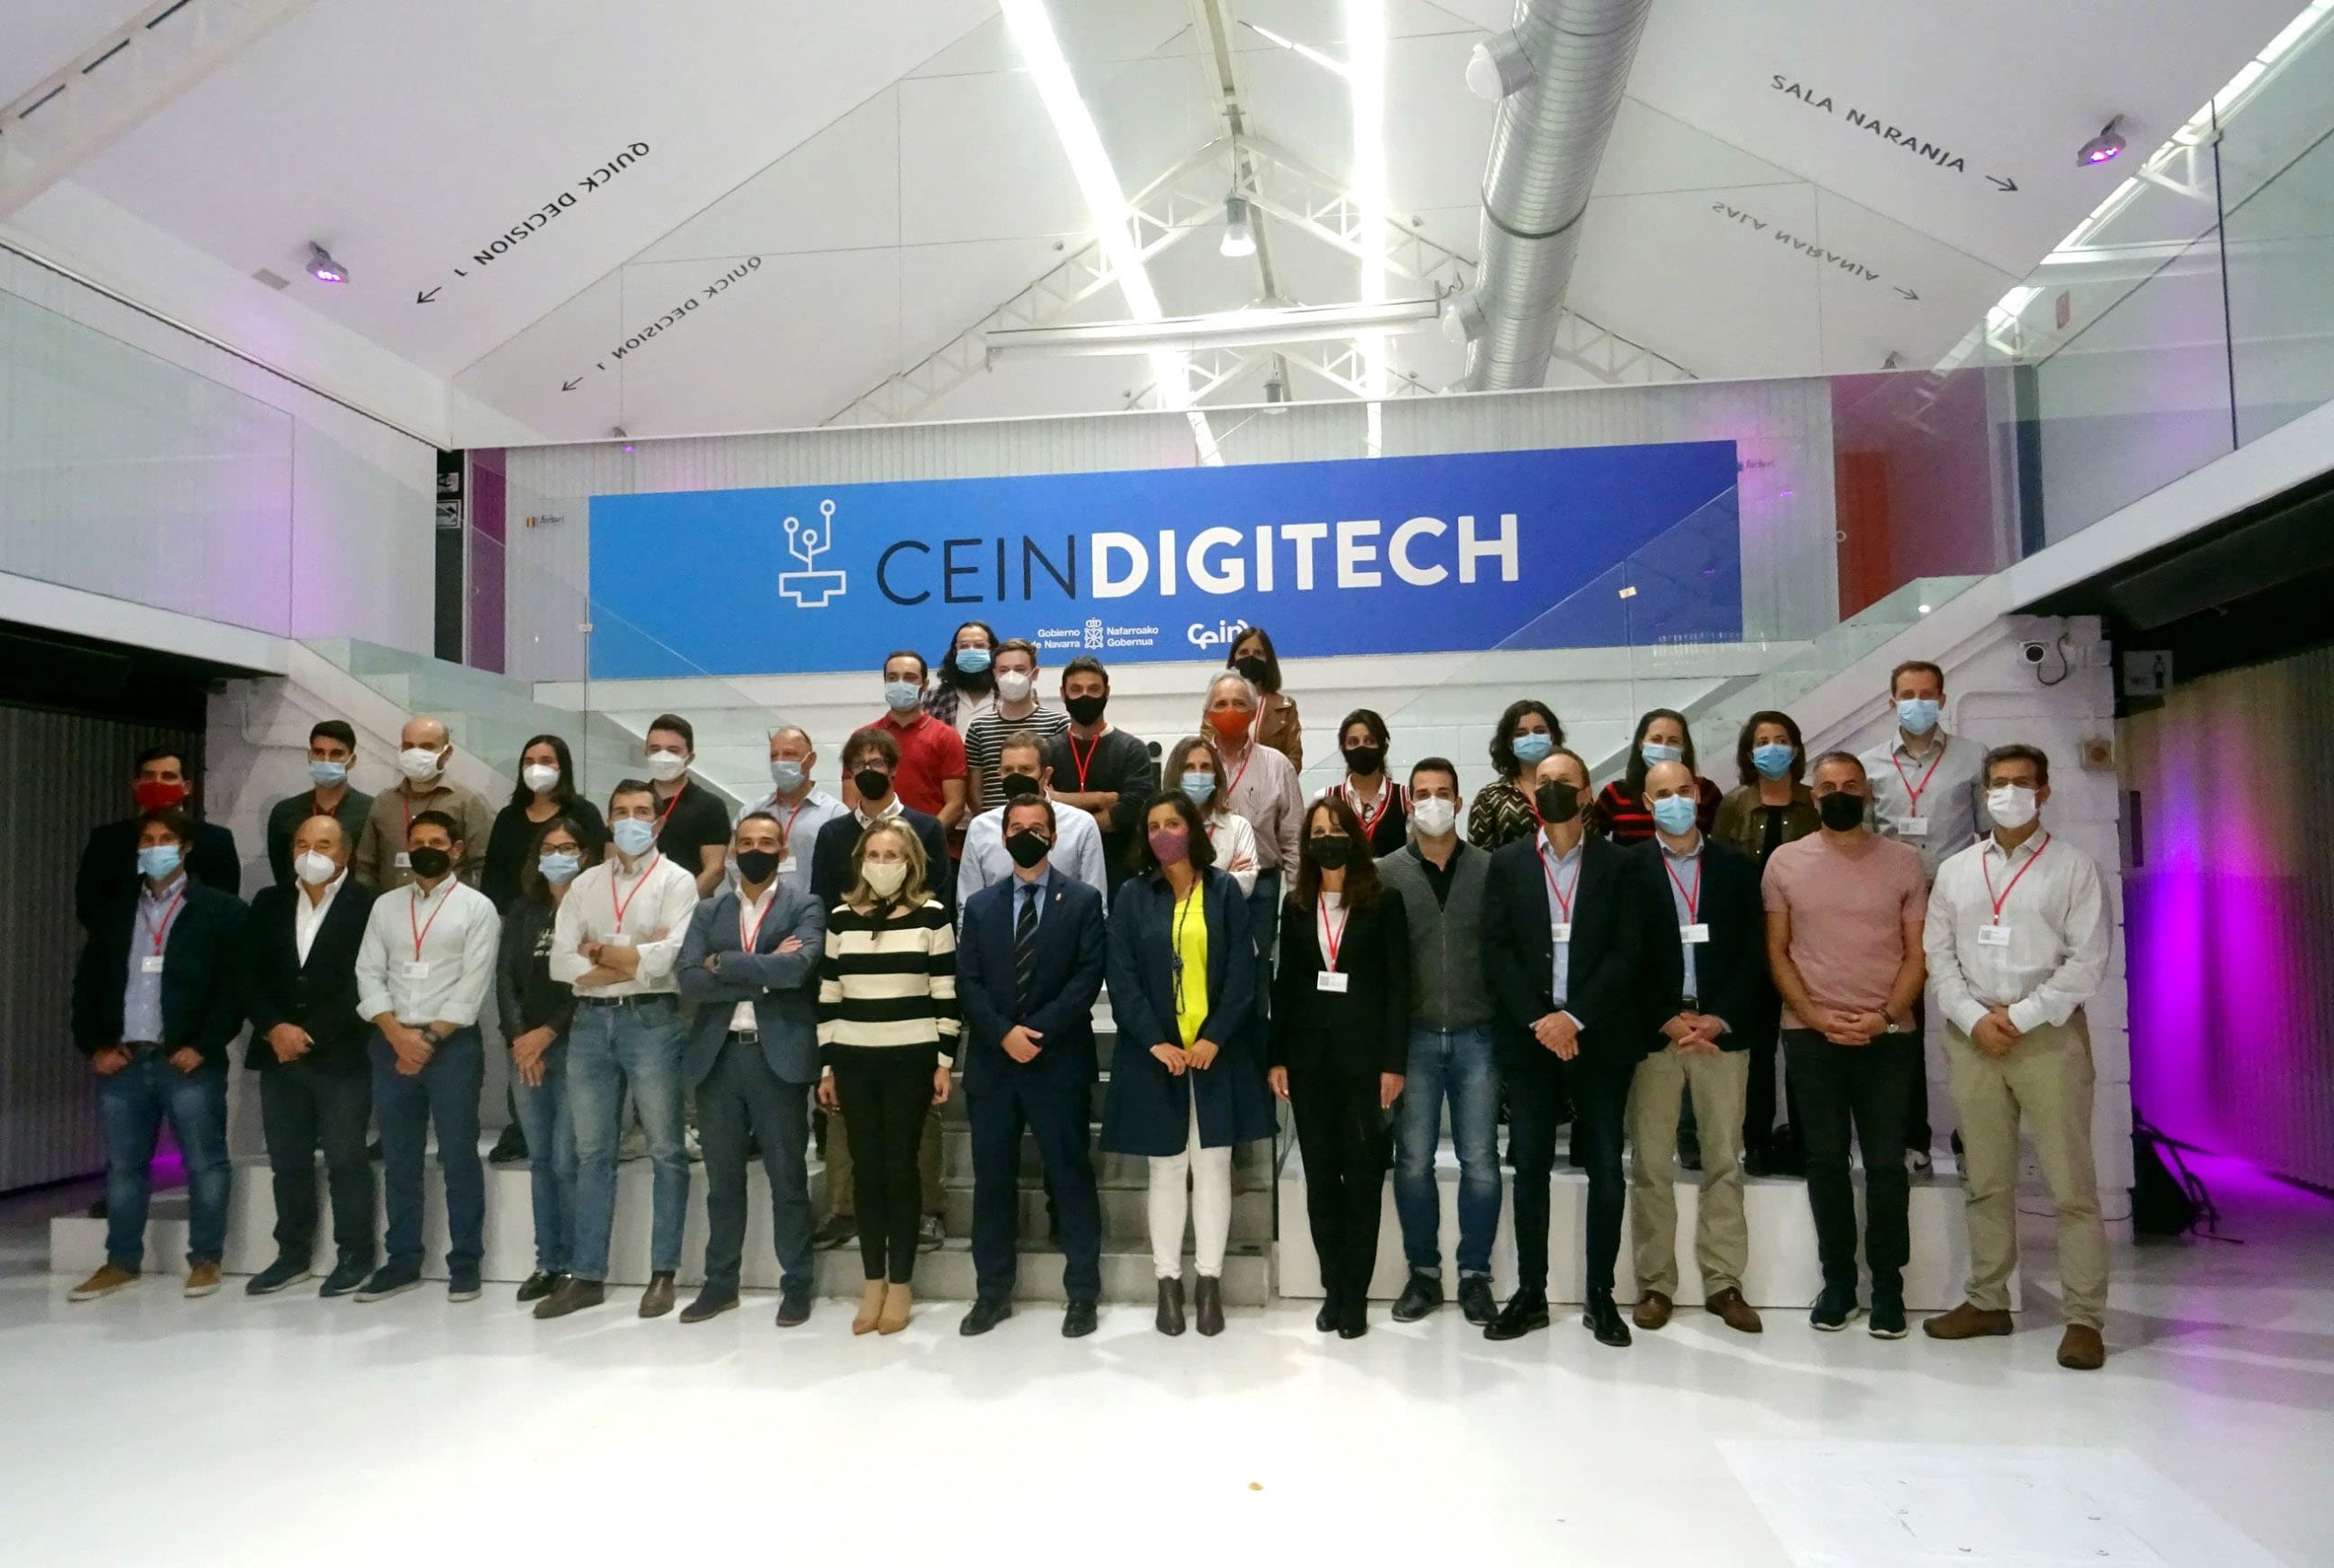 Irujo reafirma el compromiso de Navarra con la digitalizacion en el primer encuentro del programa Cein DIGITECH 3